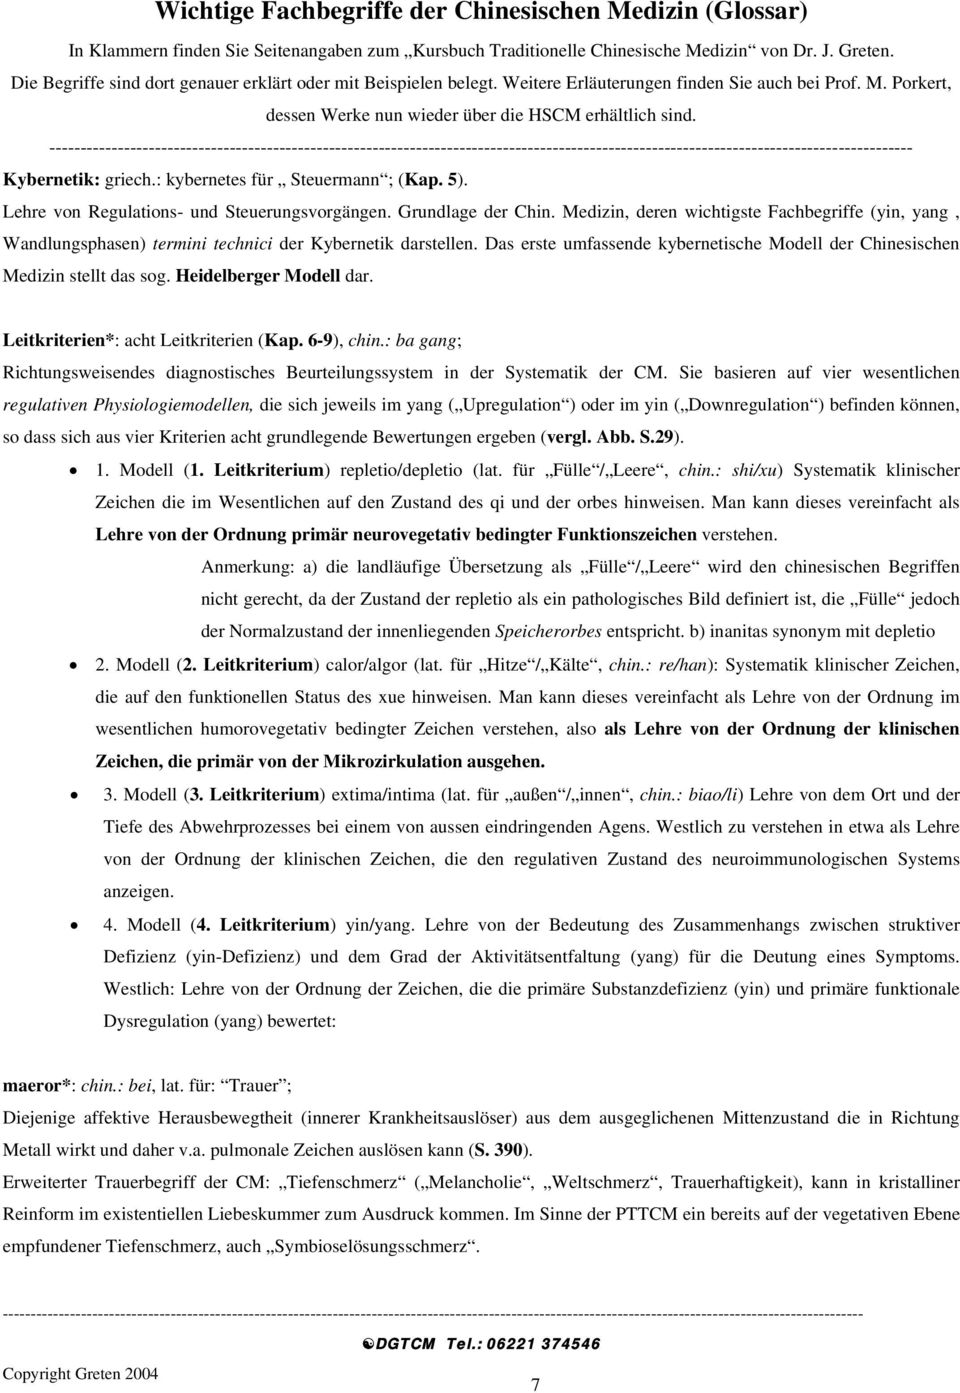 Heidelberger Modell dar. Leitkriterien*: acht Leitkriterien (Kap. 6-9), chin.: ba gang; Richtungsweisendes diagnostisches Beurteilungssystem in der Systematik der CM.